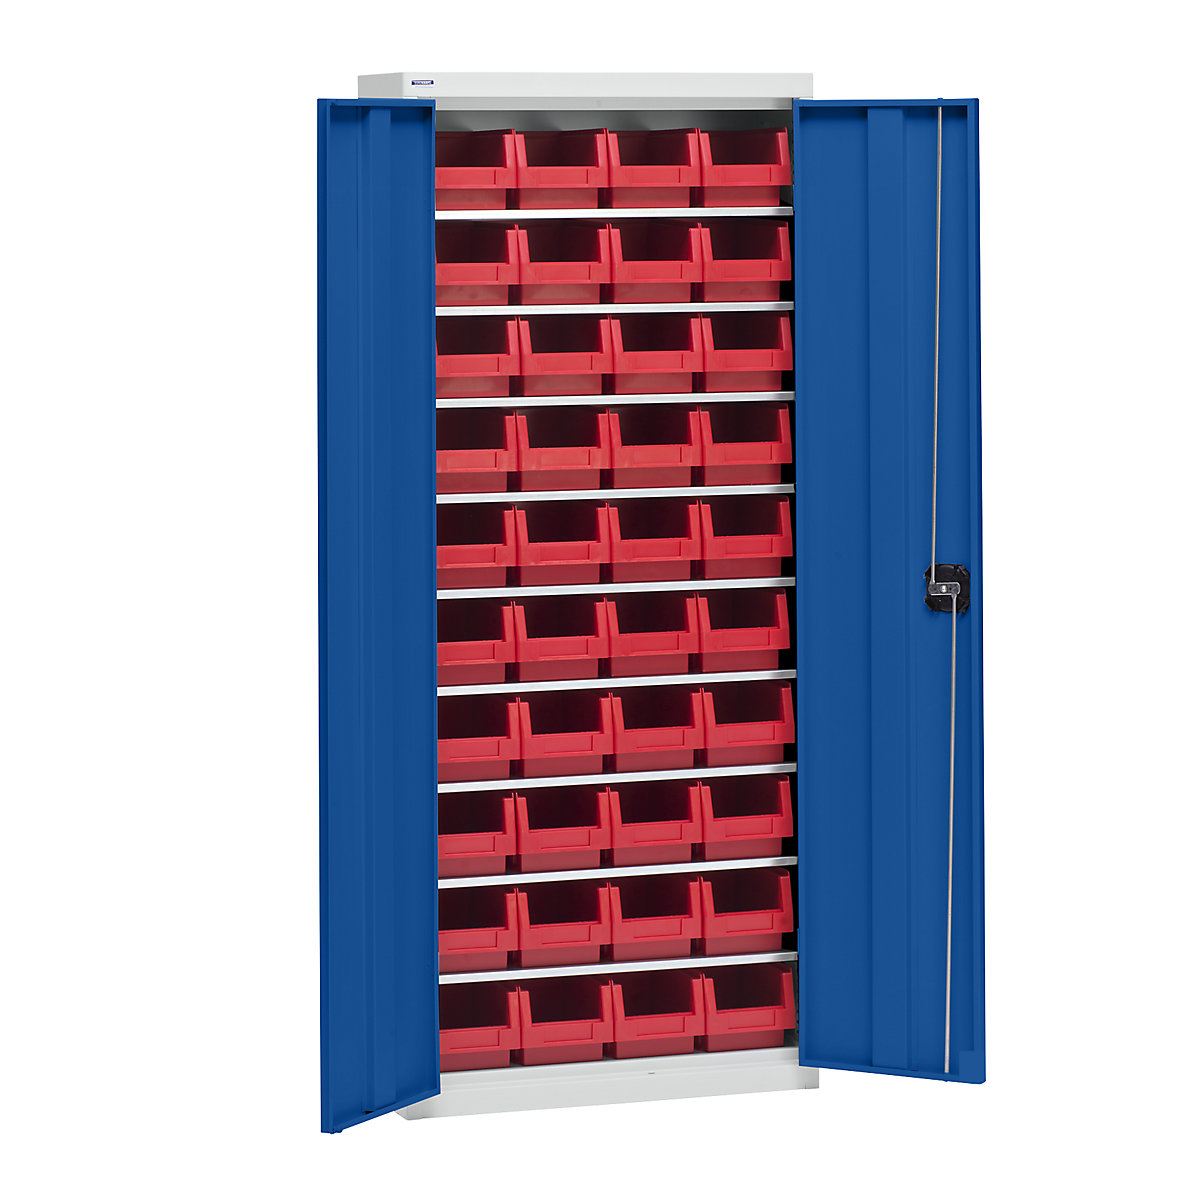 Omara za material s skladiščnimi posodami – eurokraft pro, višina 1575 mm, 9 polic, svetlo siva / encijan modra-4